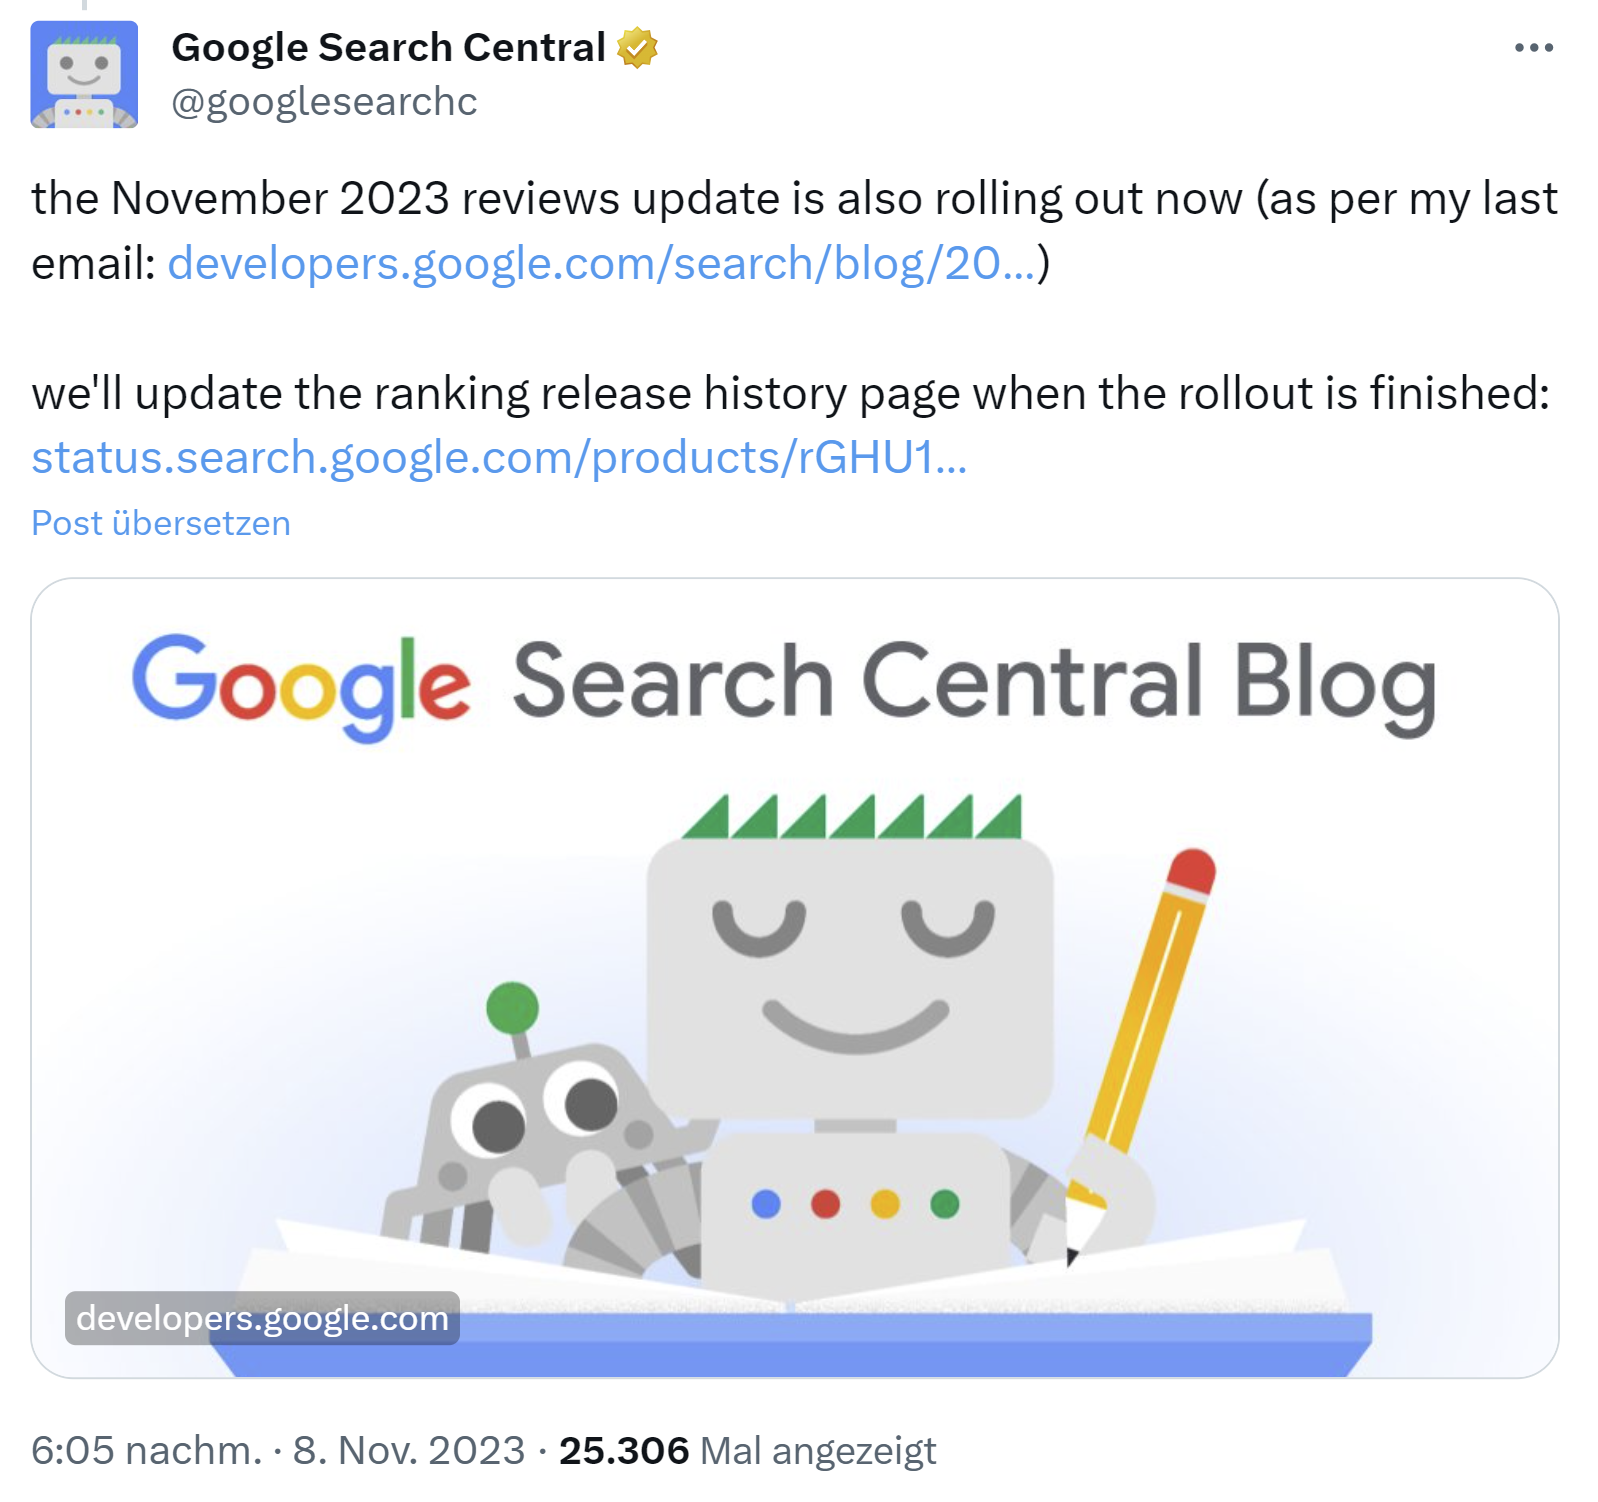 Google rollt das November 2023 Reviews Update aus